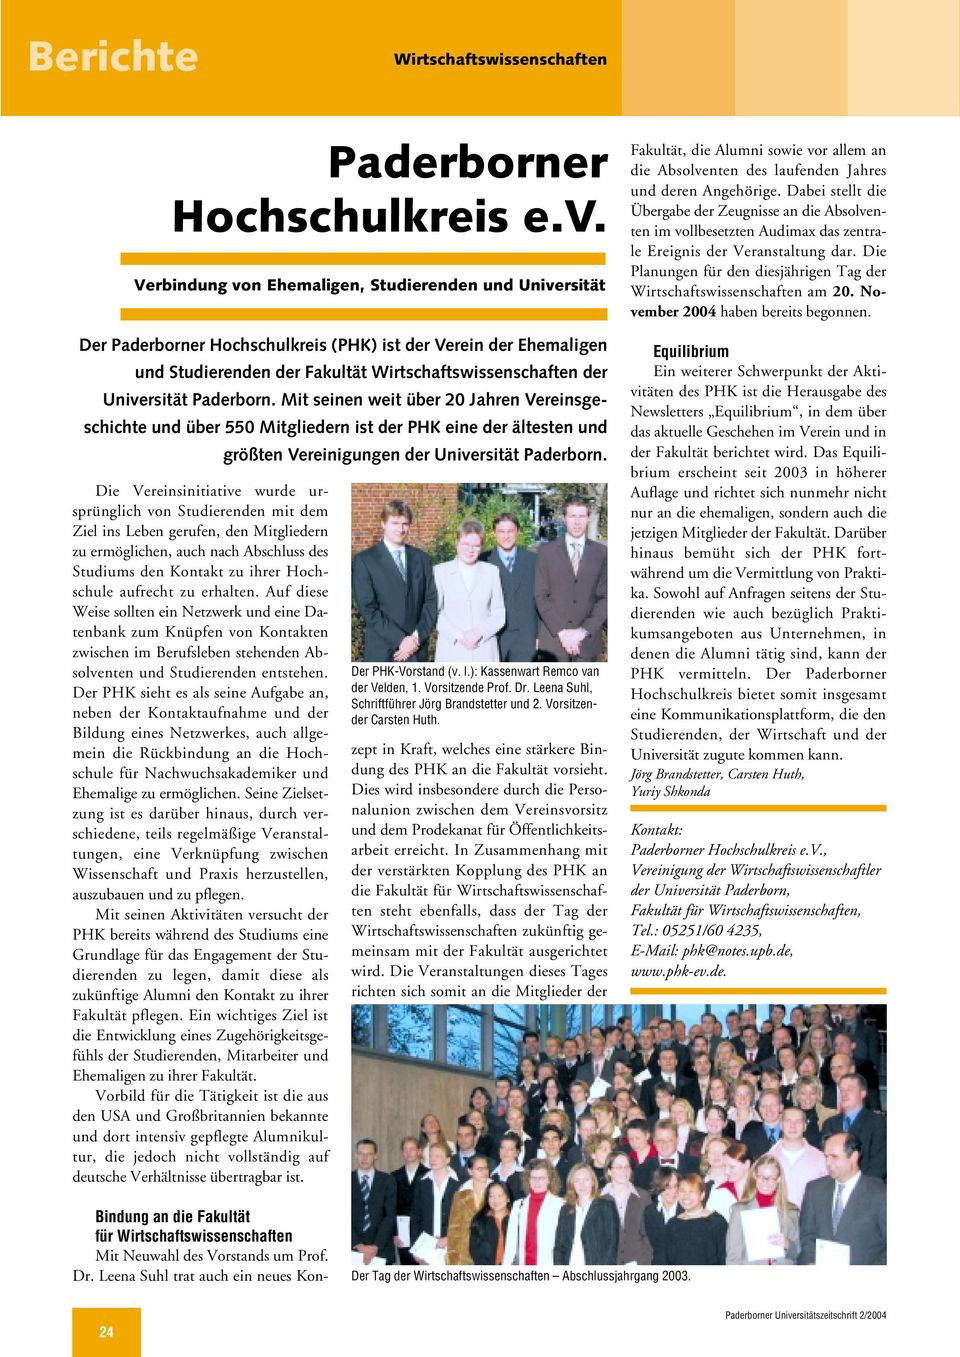 Paderborn. Mit seinen weit über 20 Jahren Vereinsgeschichte und über 550 Mitgliedern ist der PHK eine der ältesten und größten Vereinigungen der Universität Paderborn.